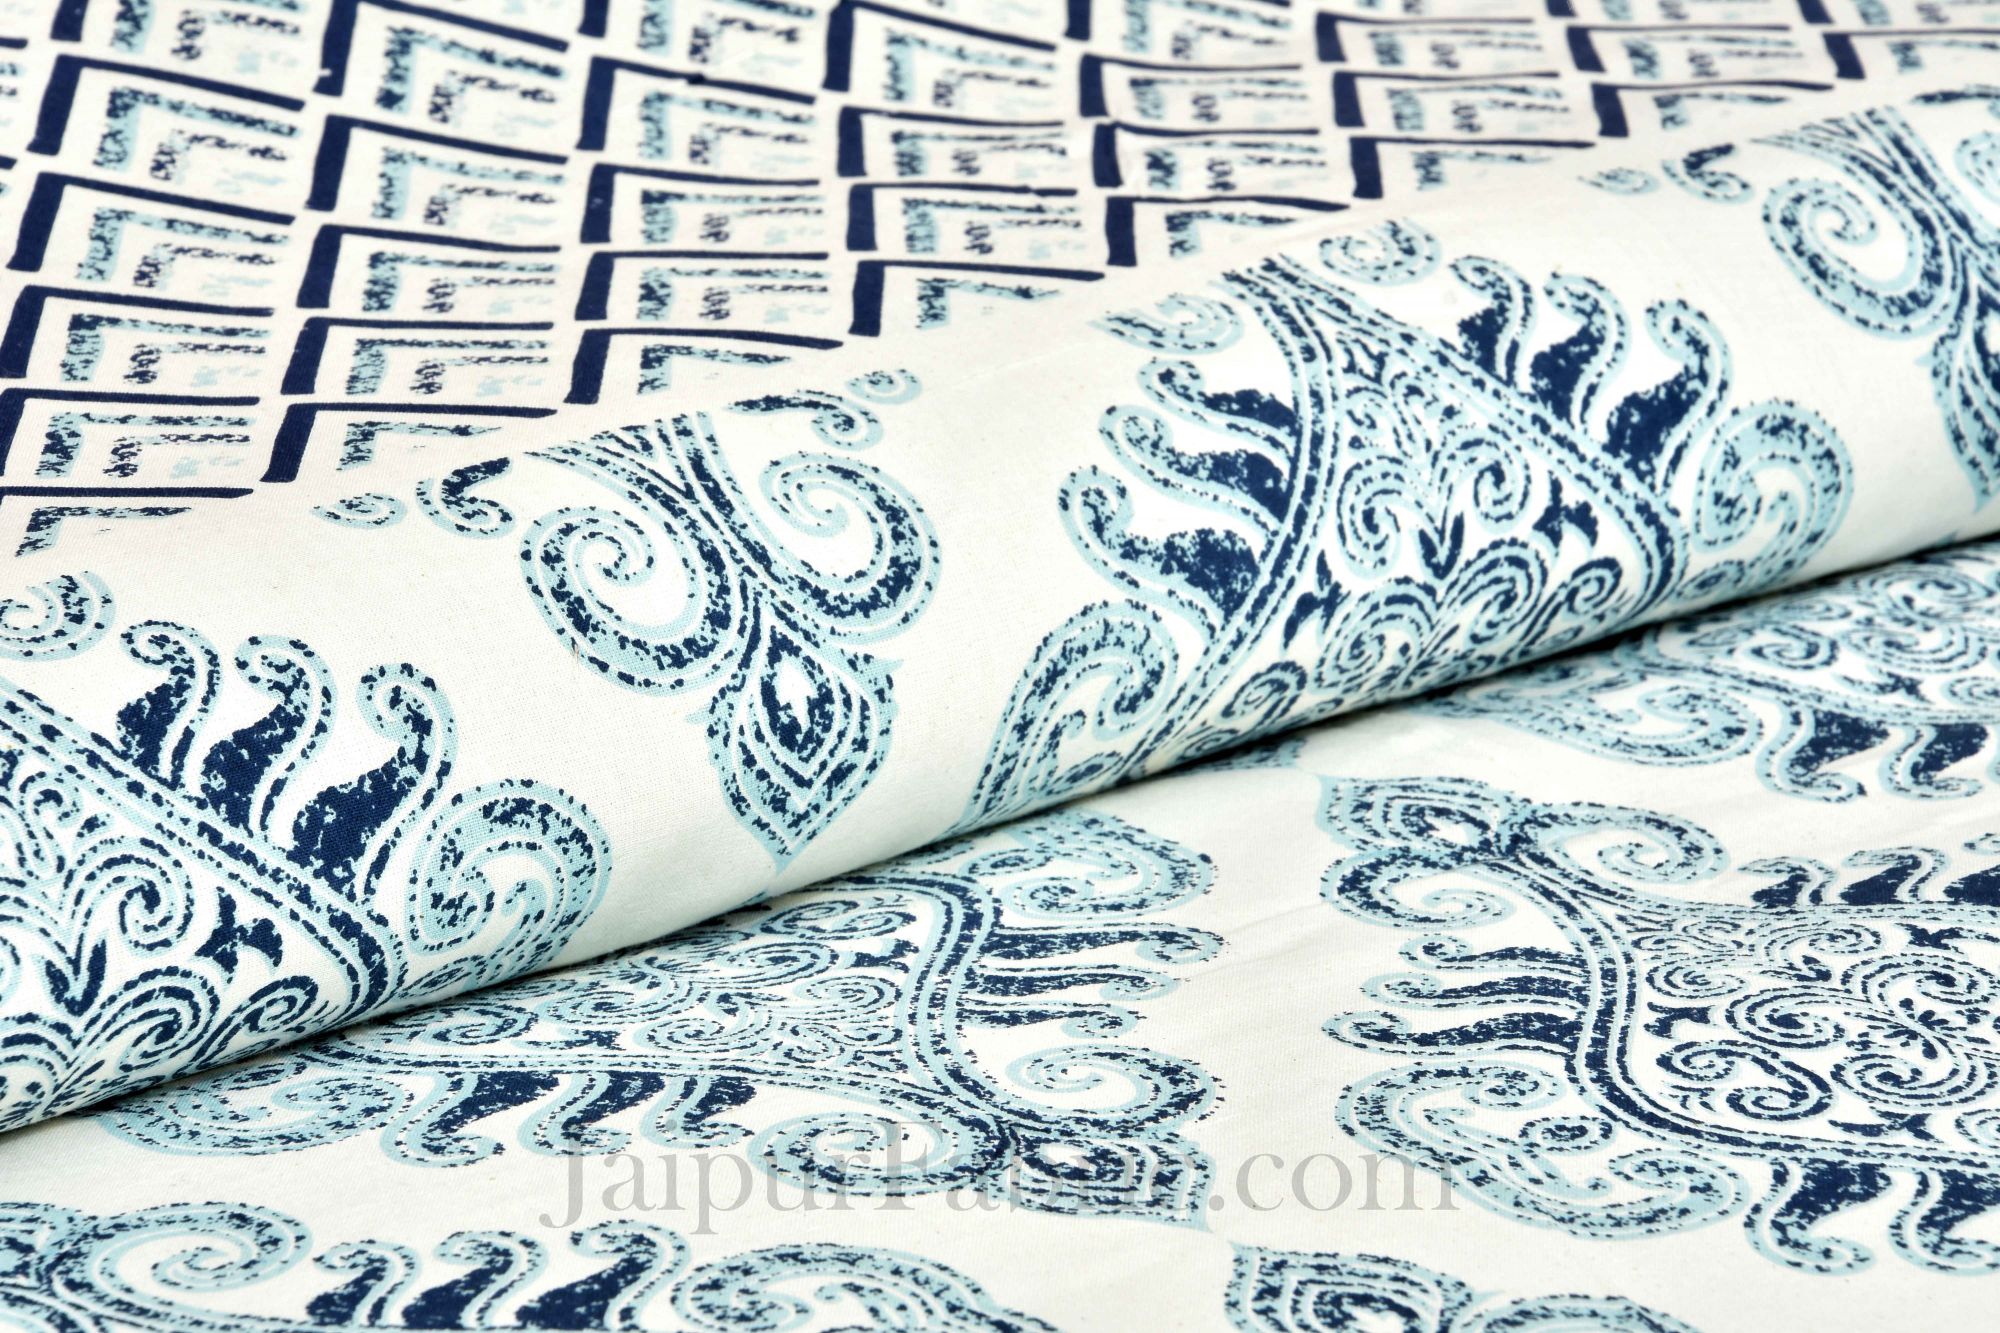 Pure Cotton Light Blue Color Zigzag Border Jaipuri Double Bedsheet